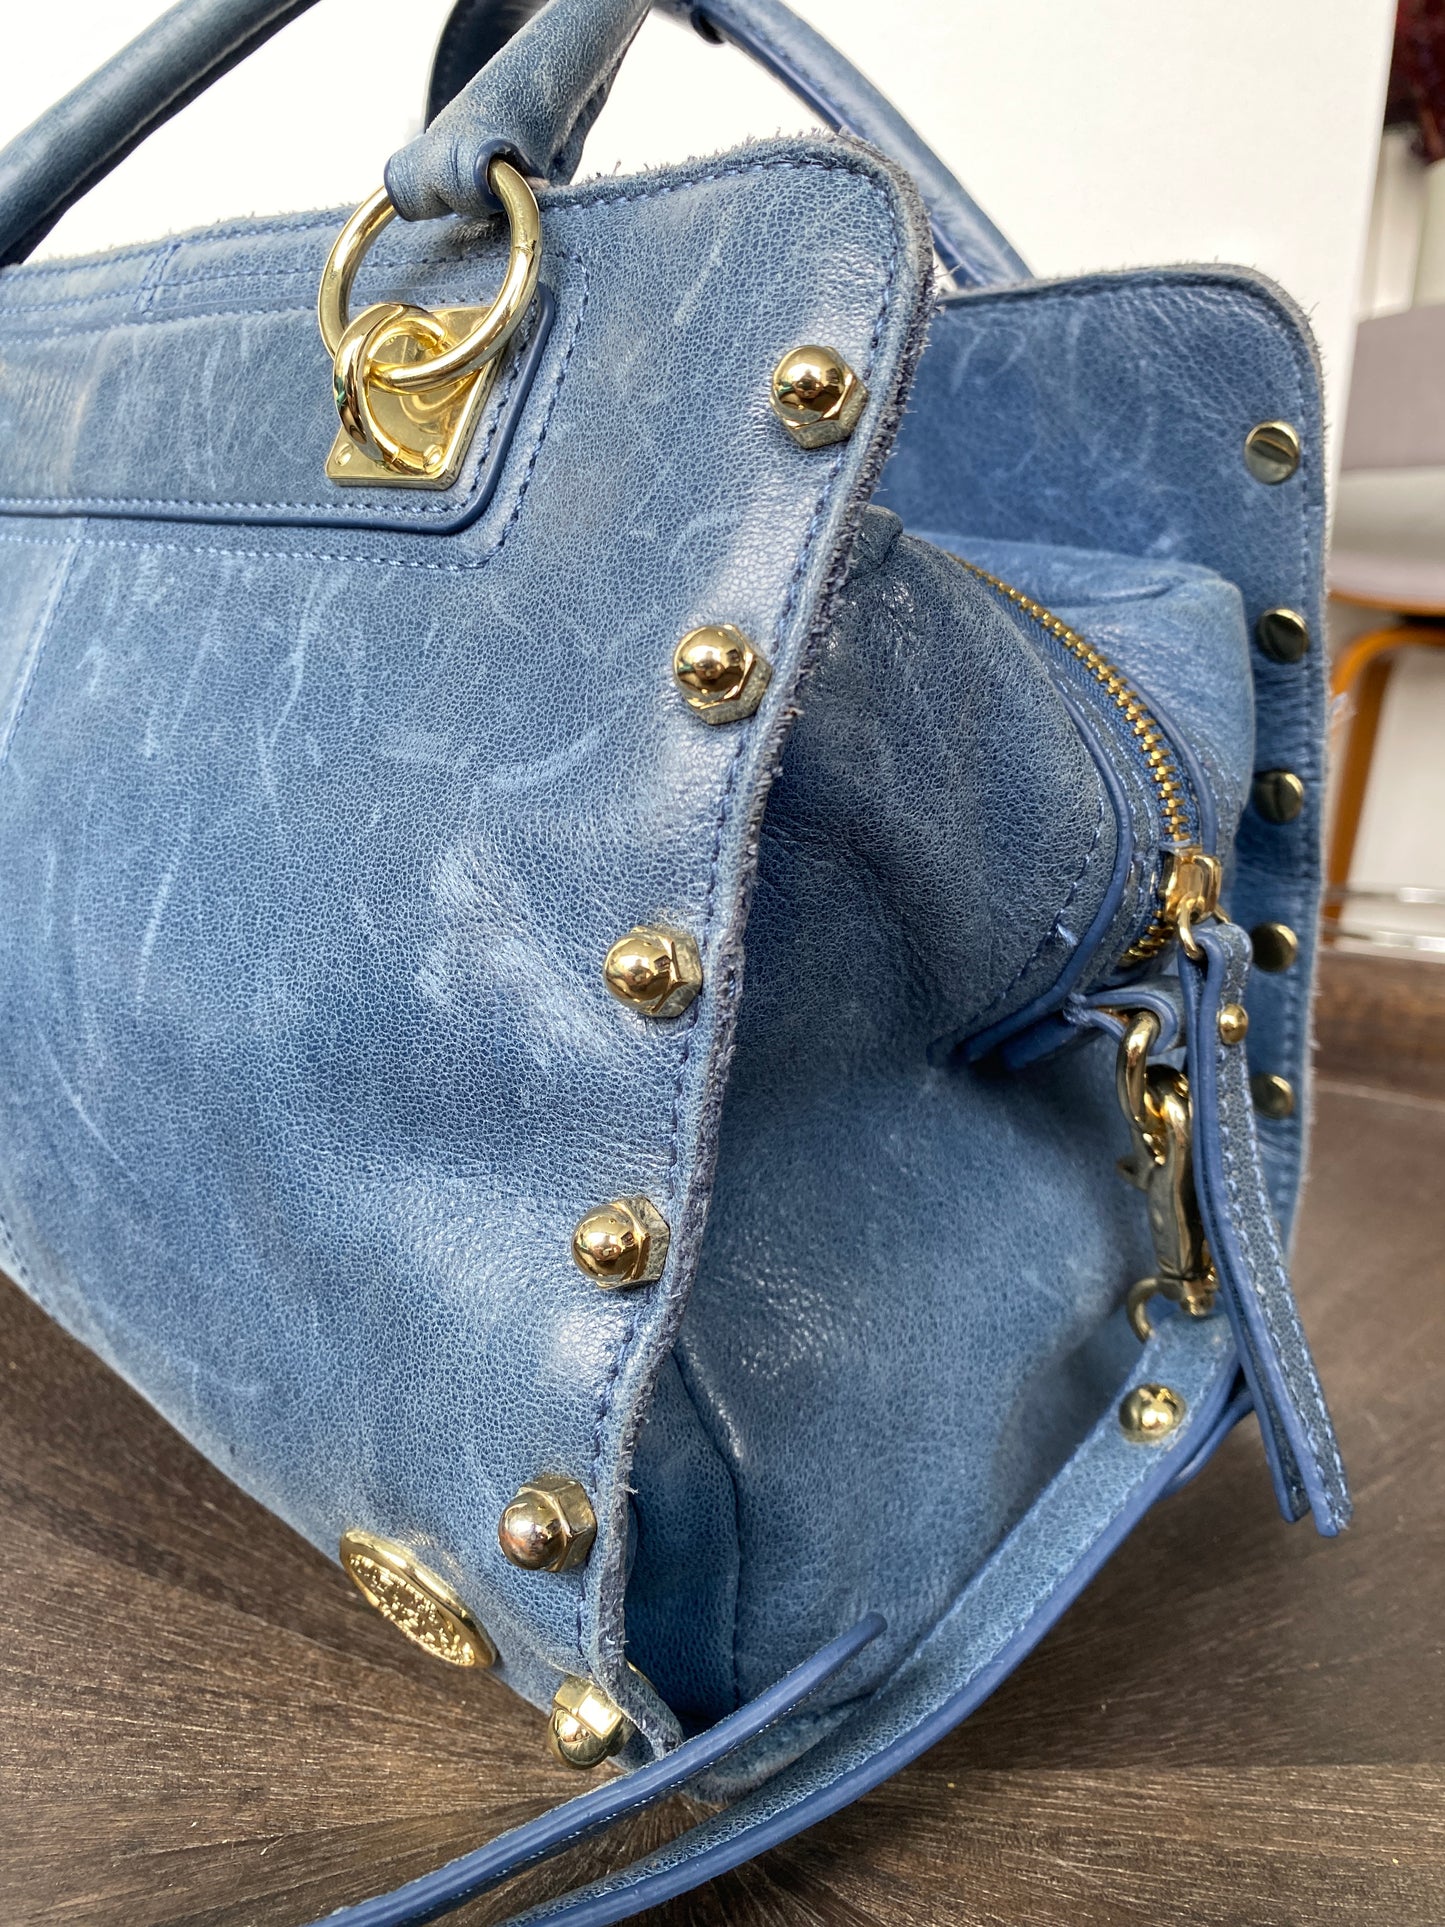 Vince Camuto Blue Leather Shoulder/Handbag with Gold Bolts